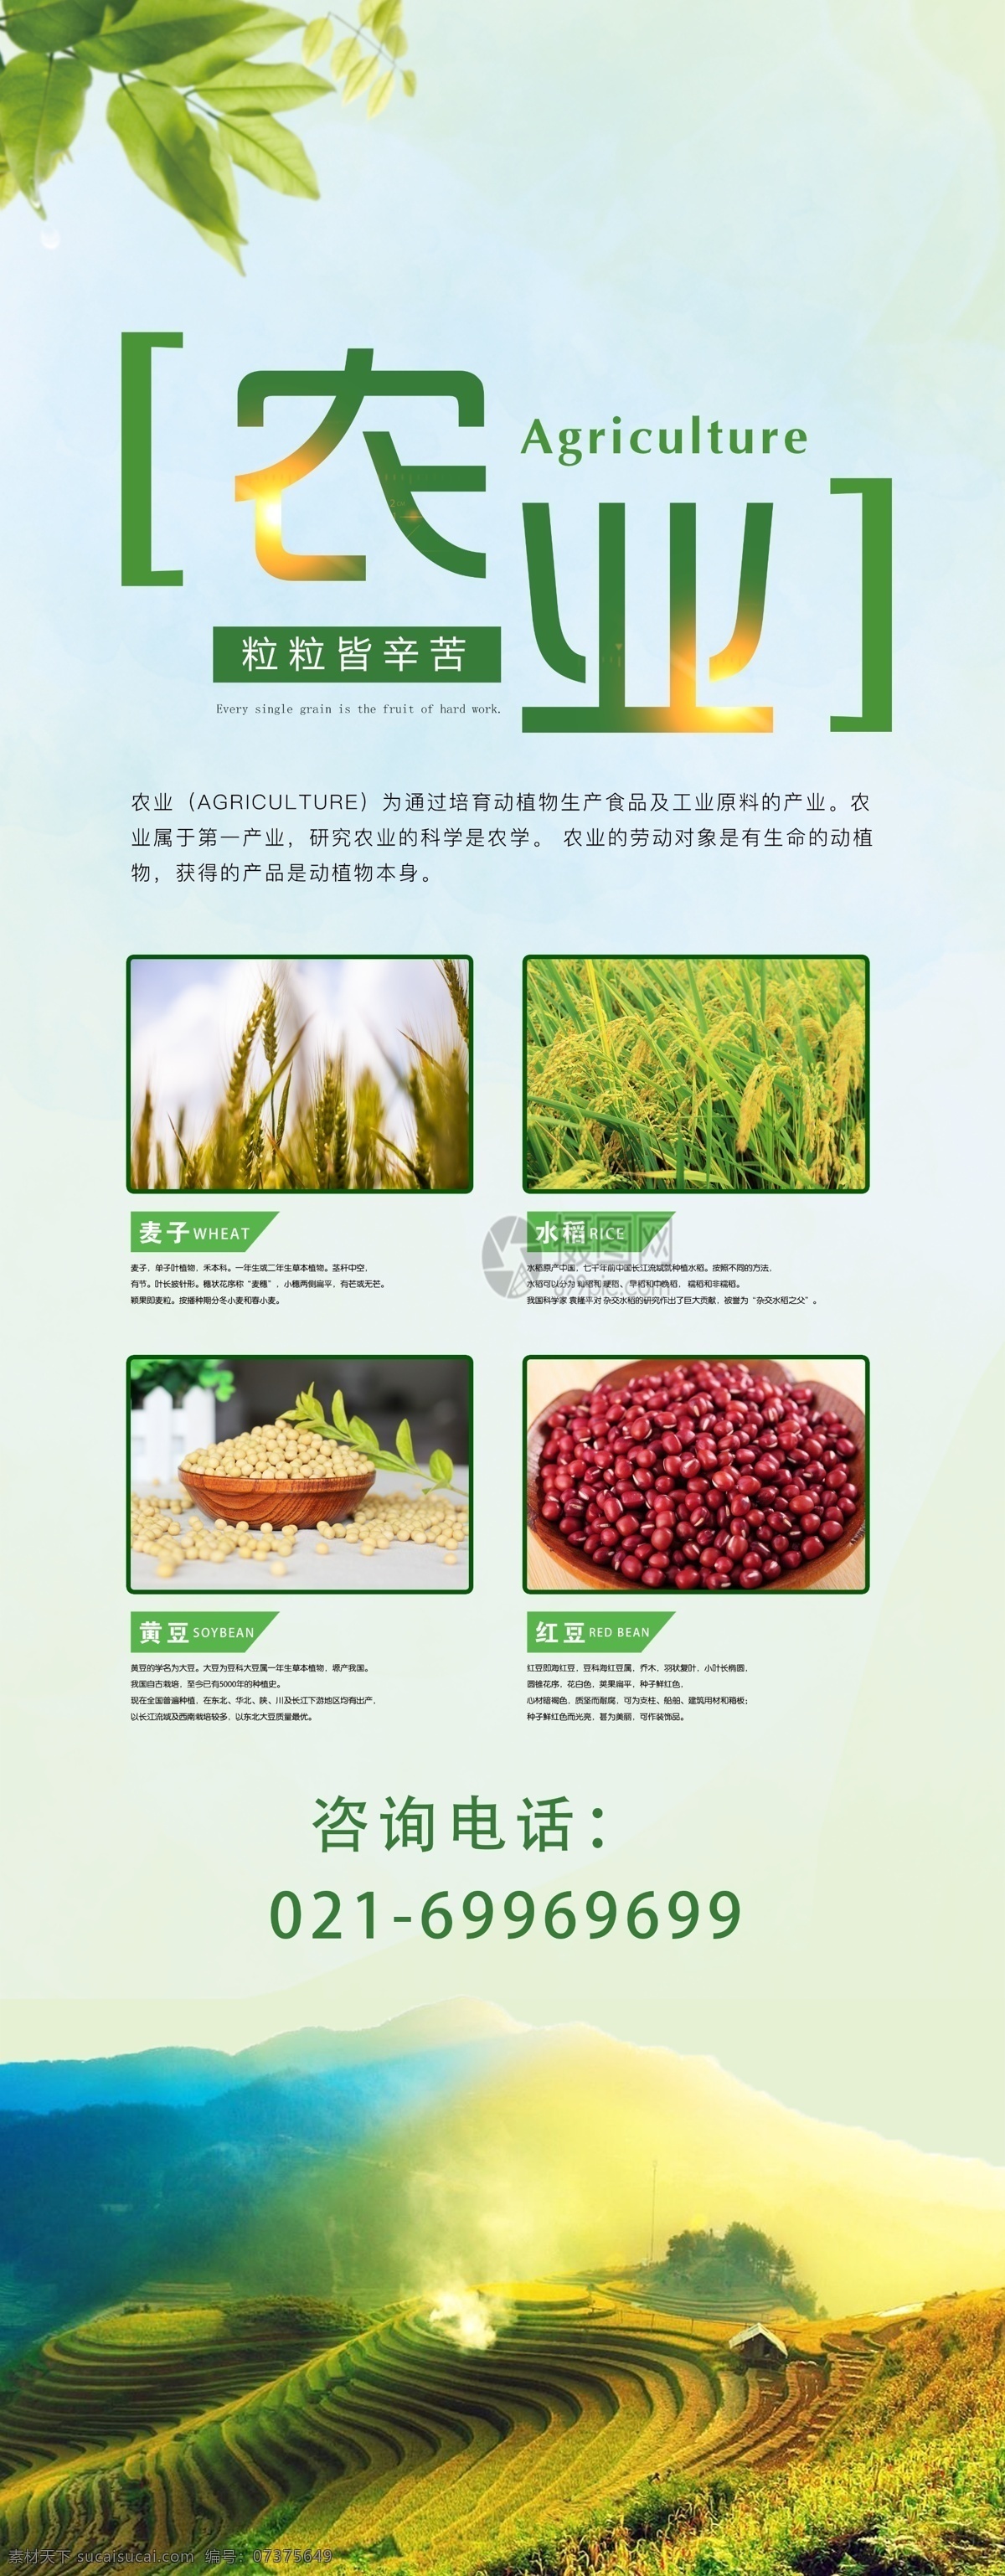 有机 粮食 生态农业 宣传 展架 大米 小麦 水稻 红豆 黄豆 农业 小农经济 农产品 有机粮食 易拉宝